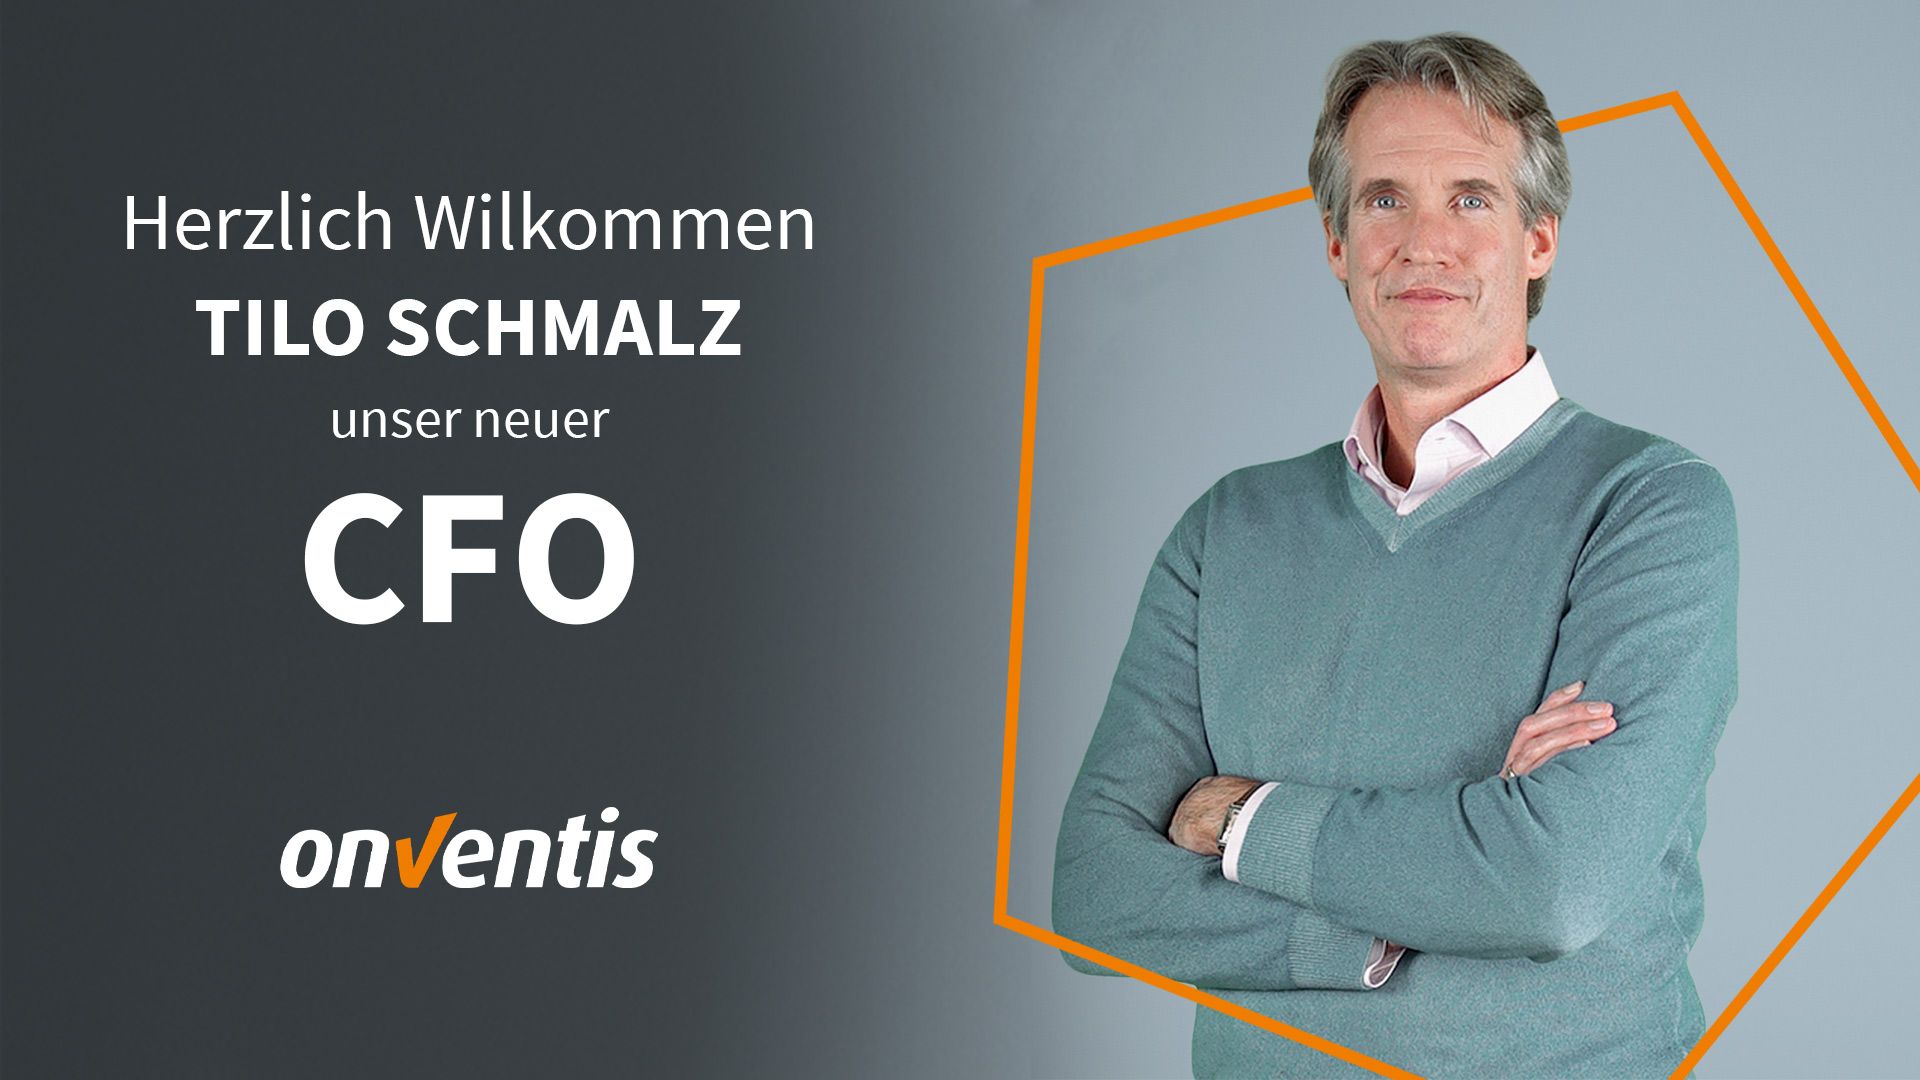 Tilo Schmalz ist neuer Chief Financial Officer